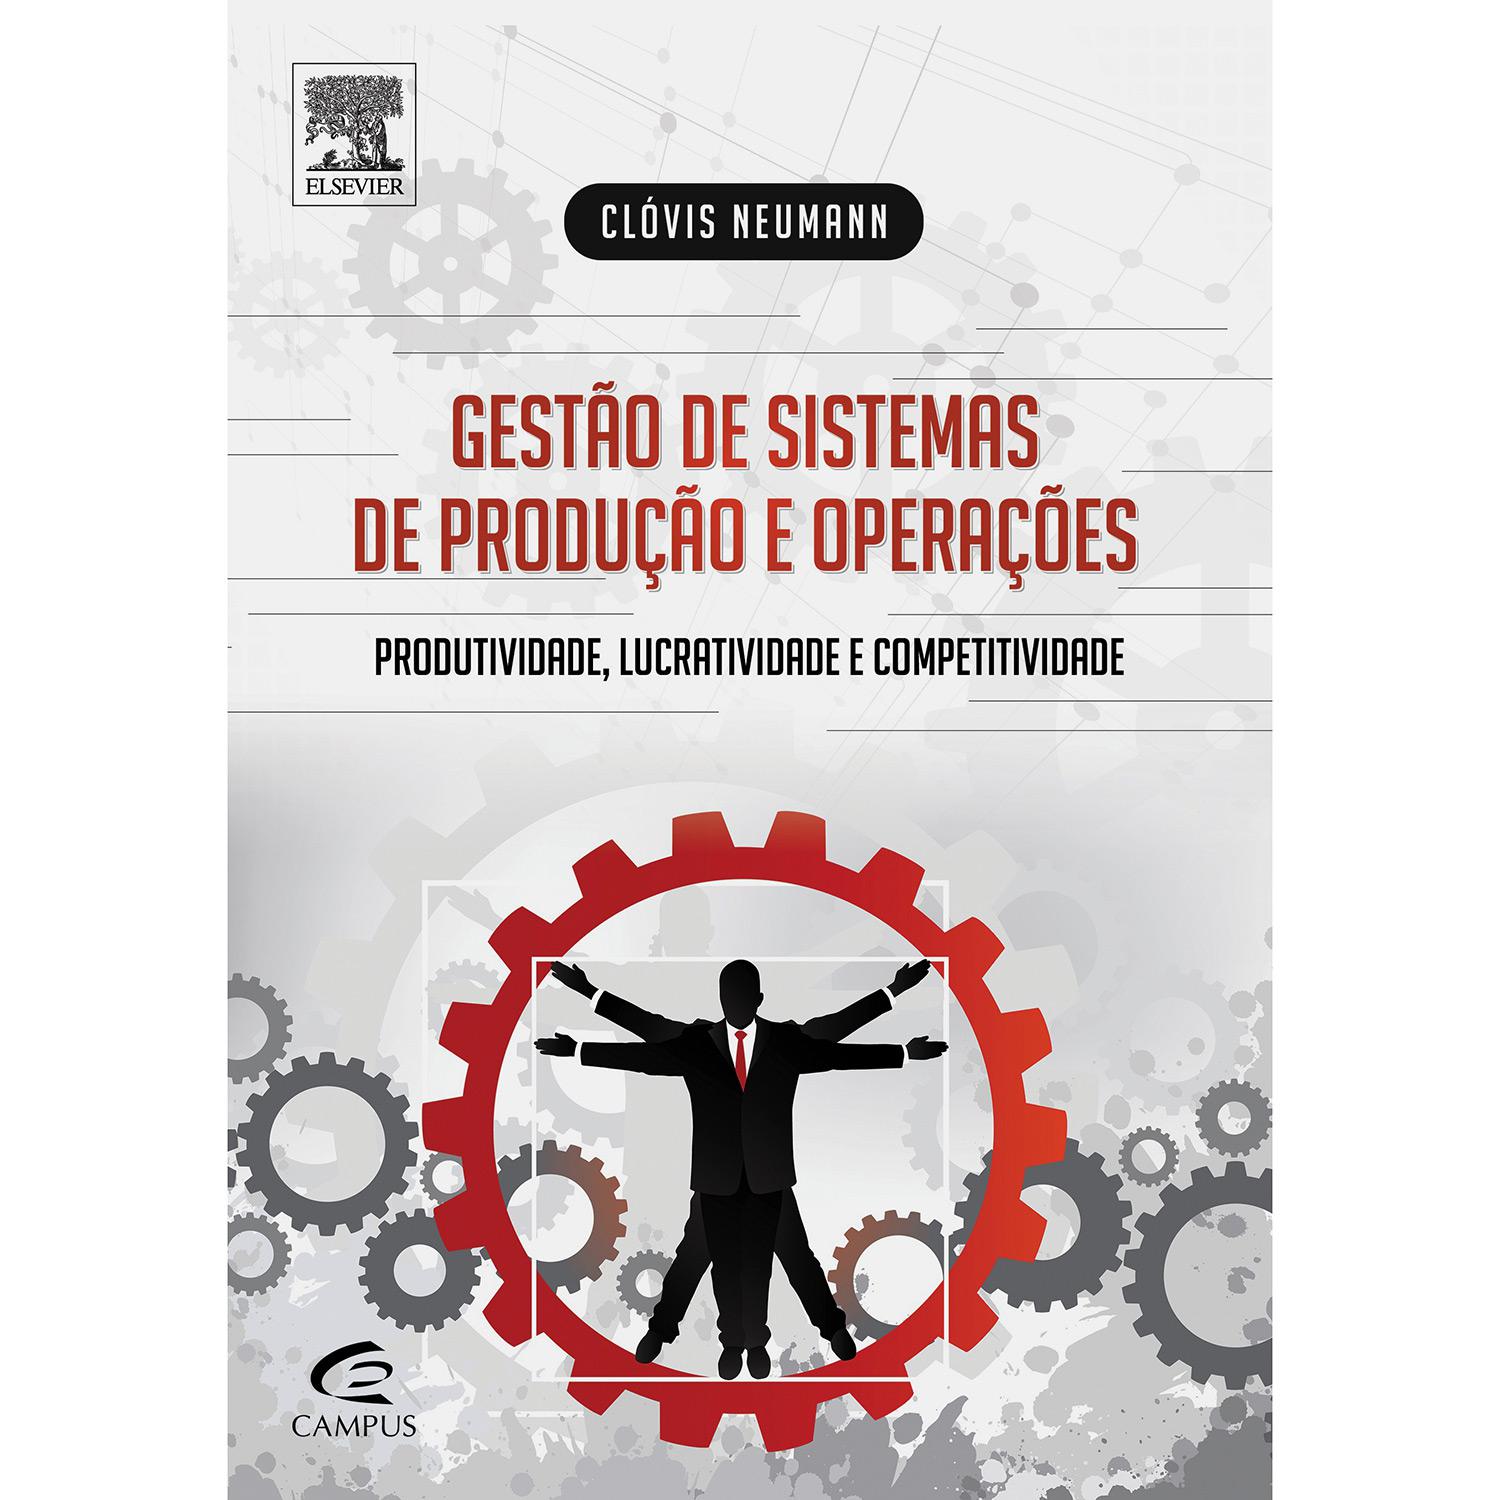 Livro - Gestão de Sistemas de Produção e Operações: Produtividade, Lucratividade e Competitividade é bom? Vale a pena?